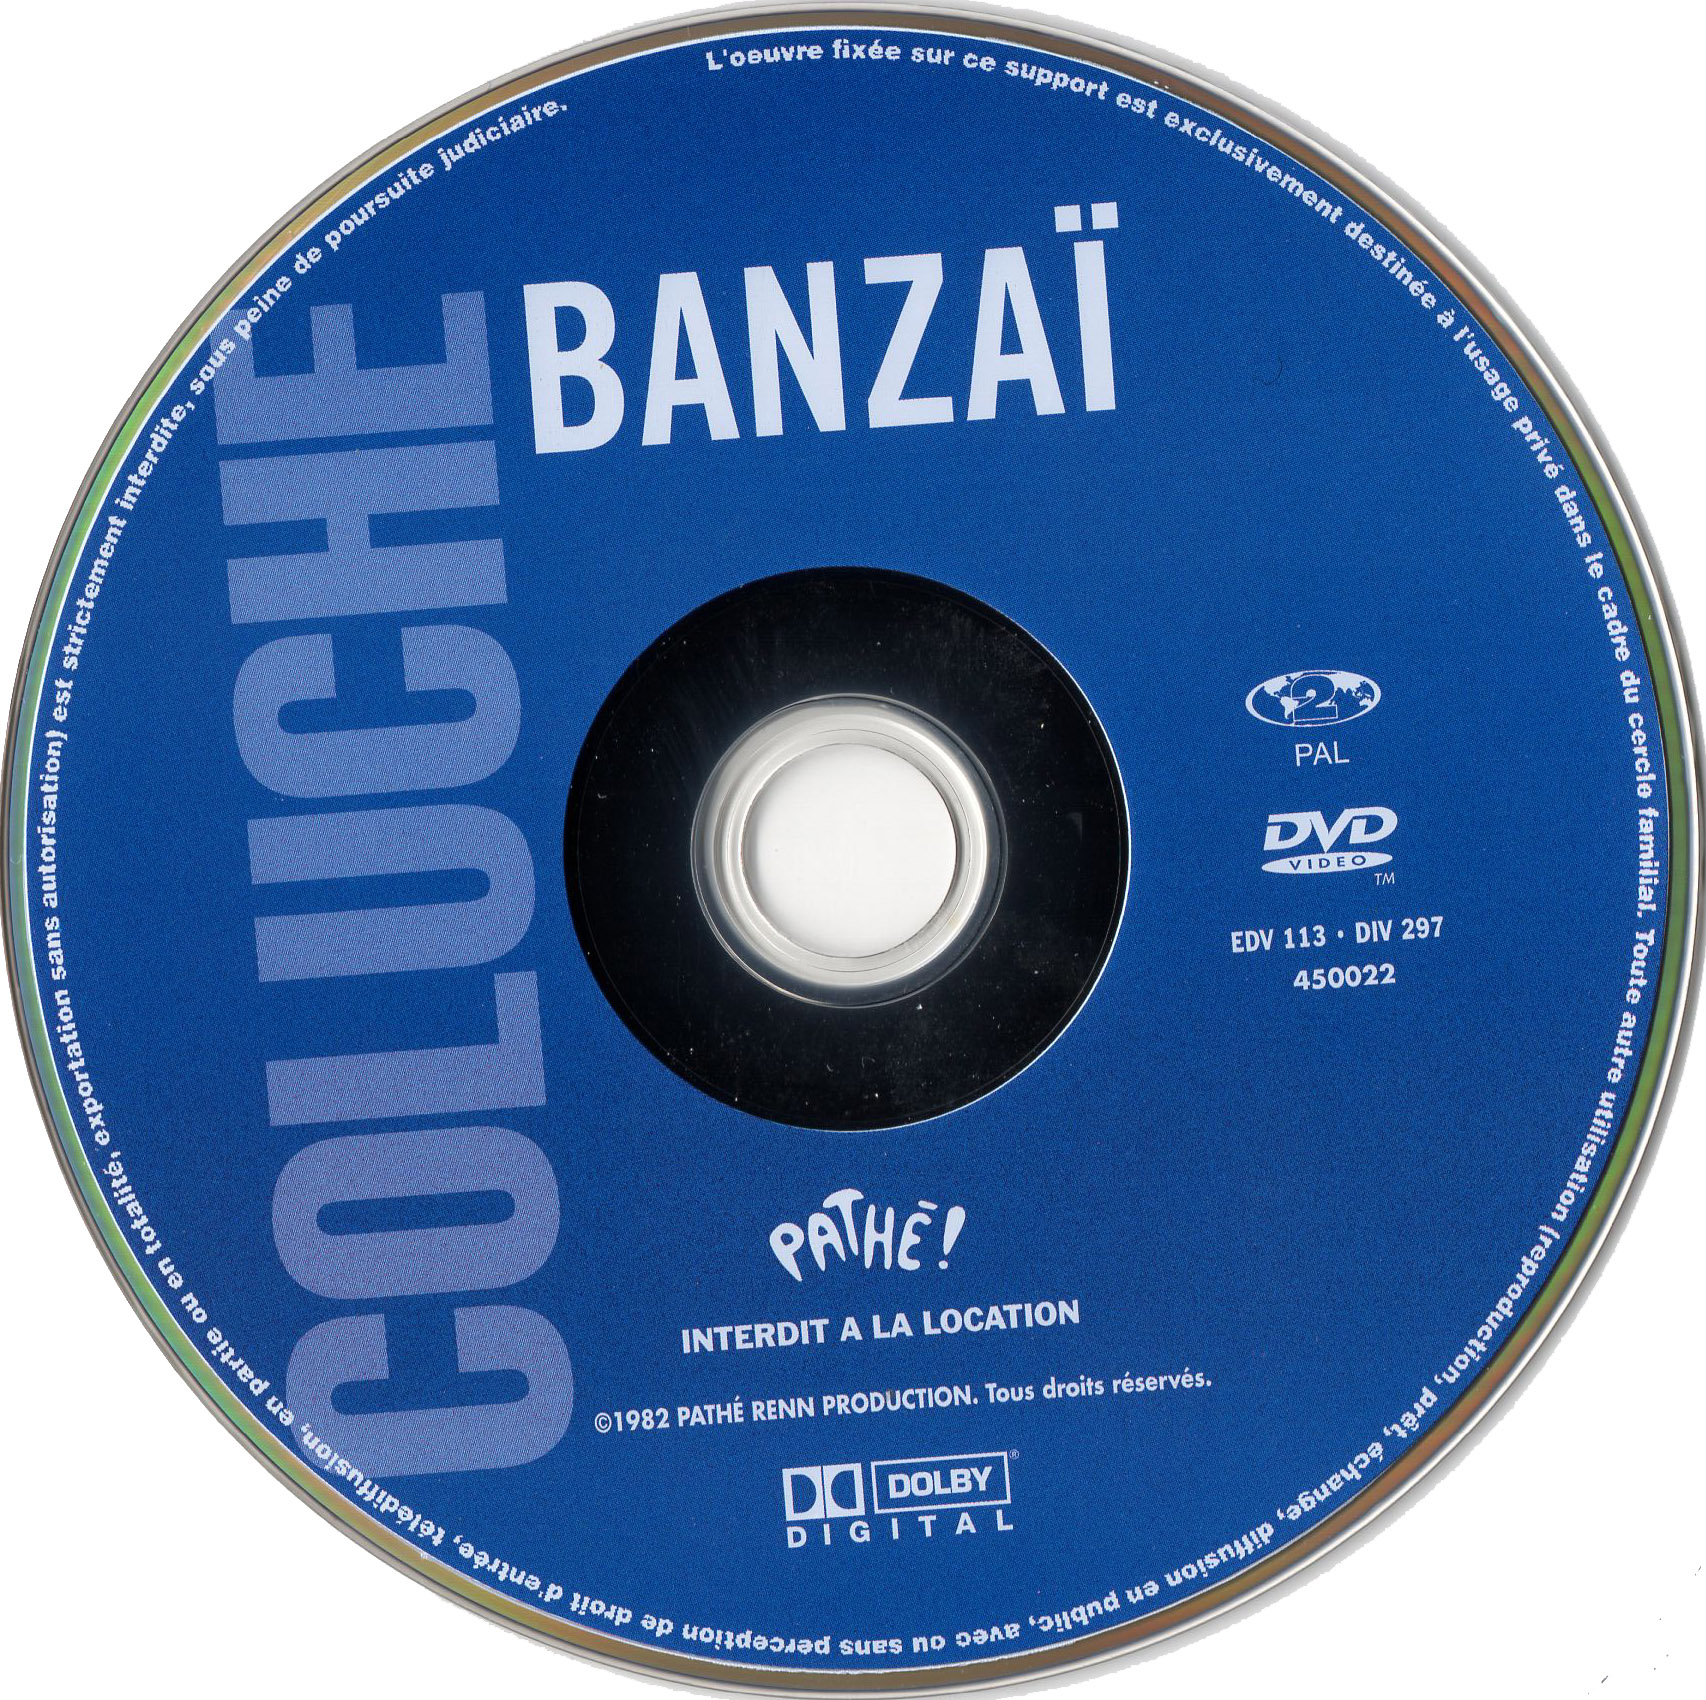 Banzai v2